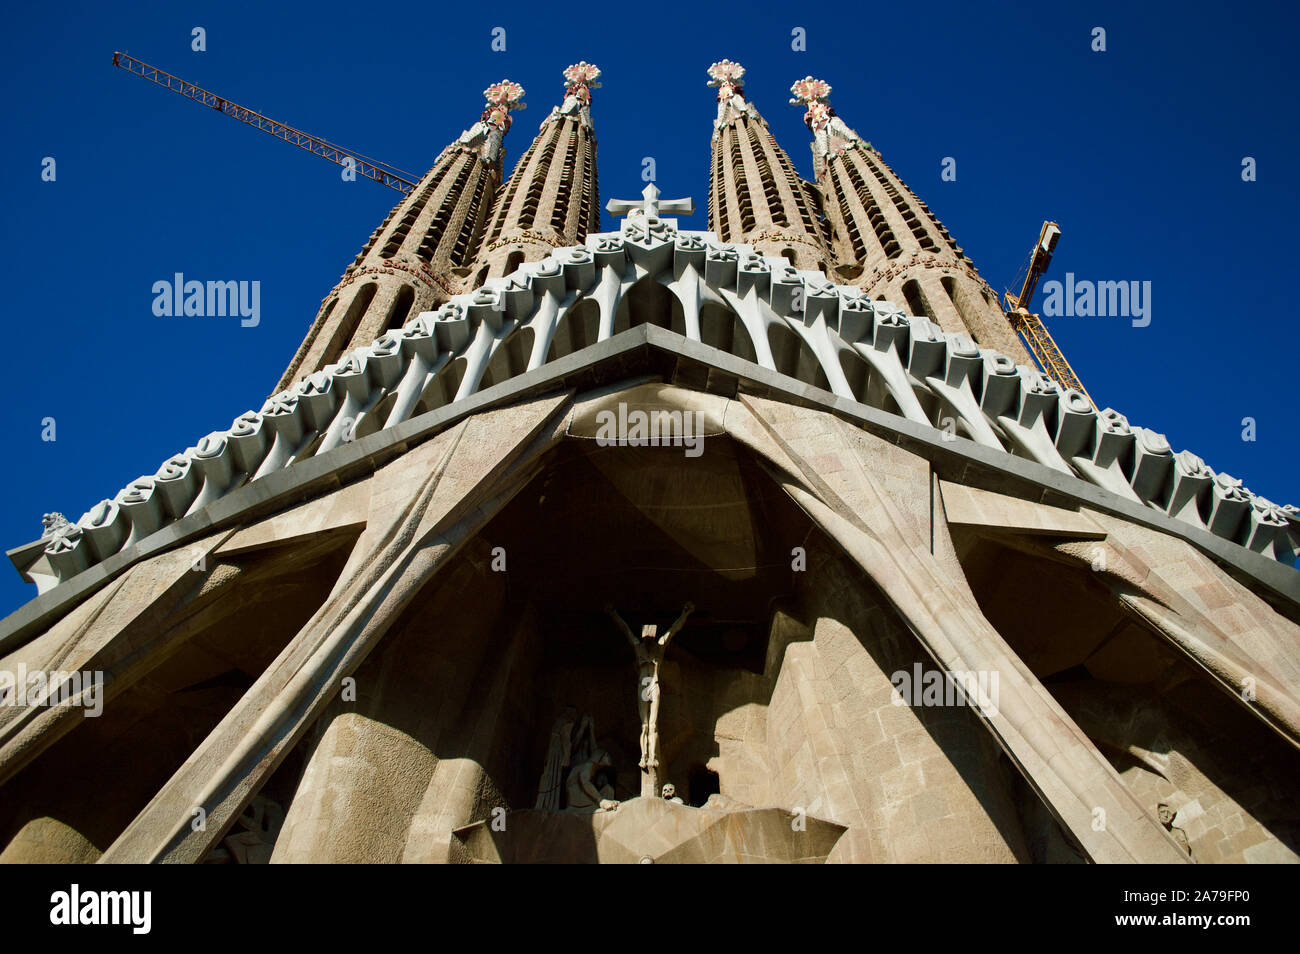 The passion facade of La Sagrada Familia in Barcelona, Spain Stock Photo